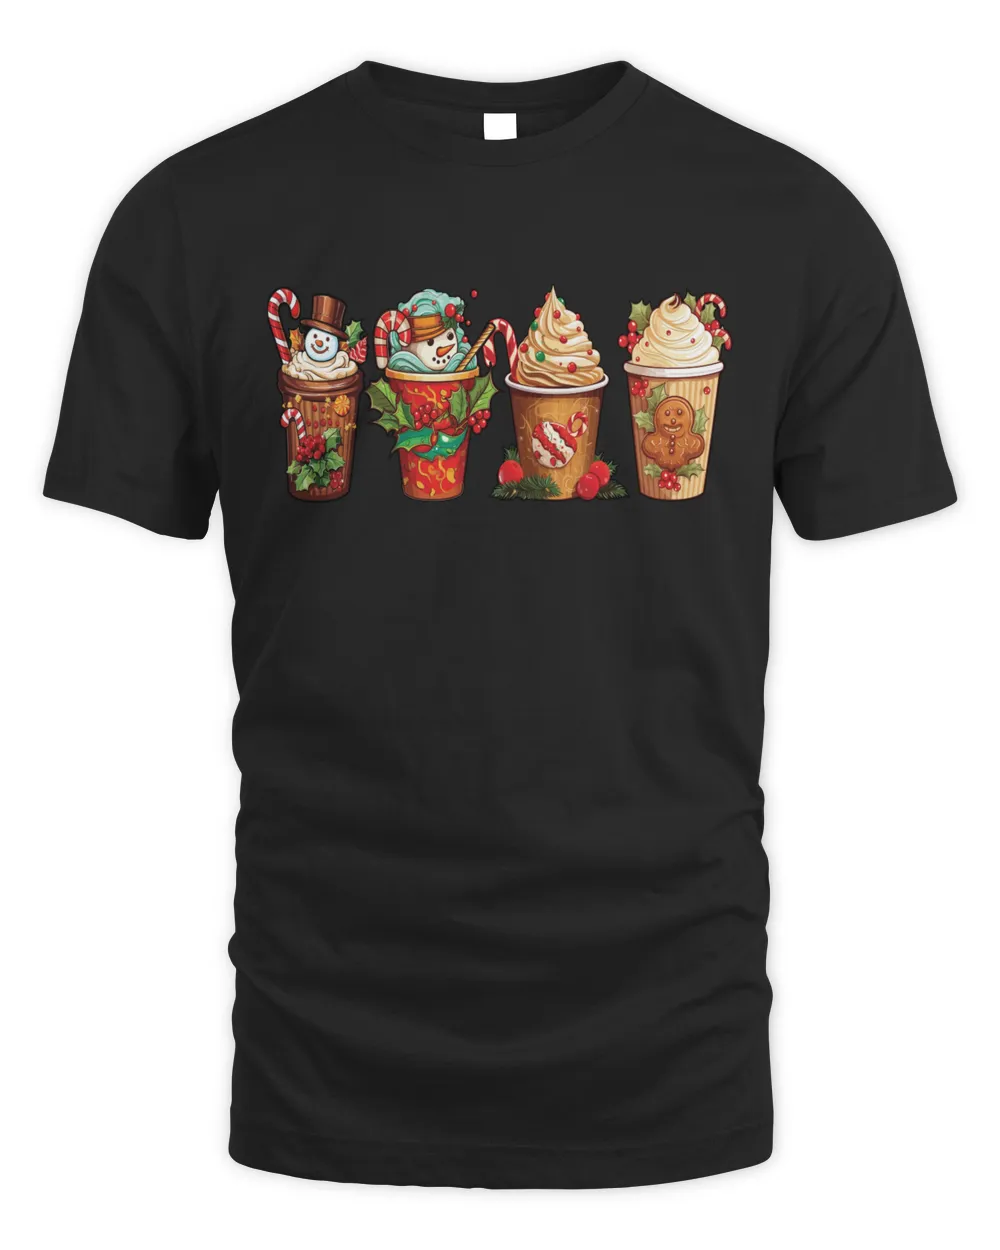 Coffee Cup Christmas Shirt, Hoodie, Sweatshirt, Christmas Gift For Family